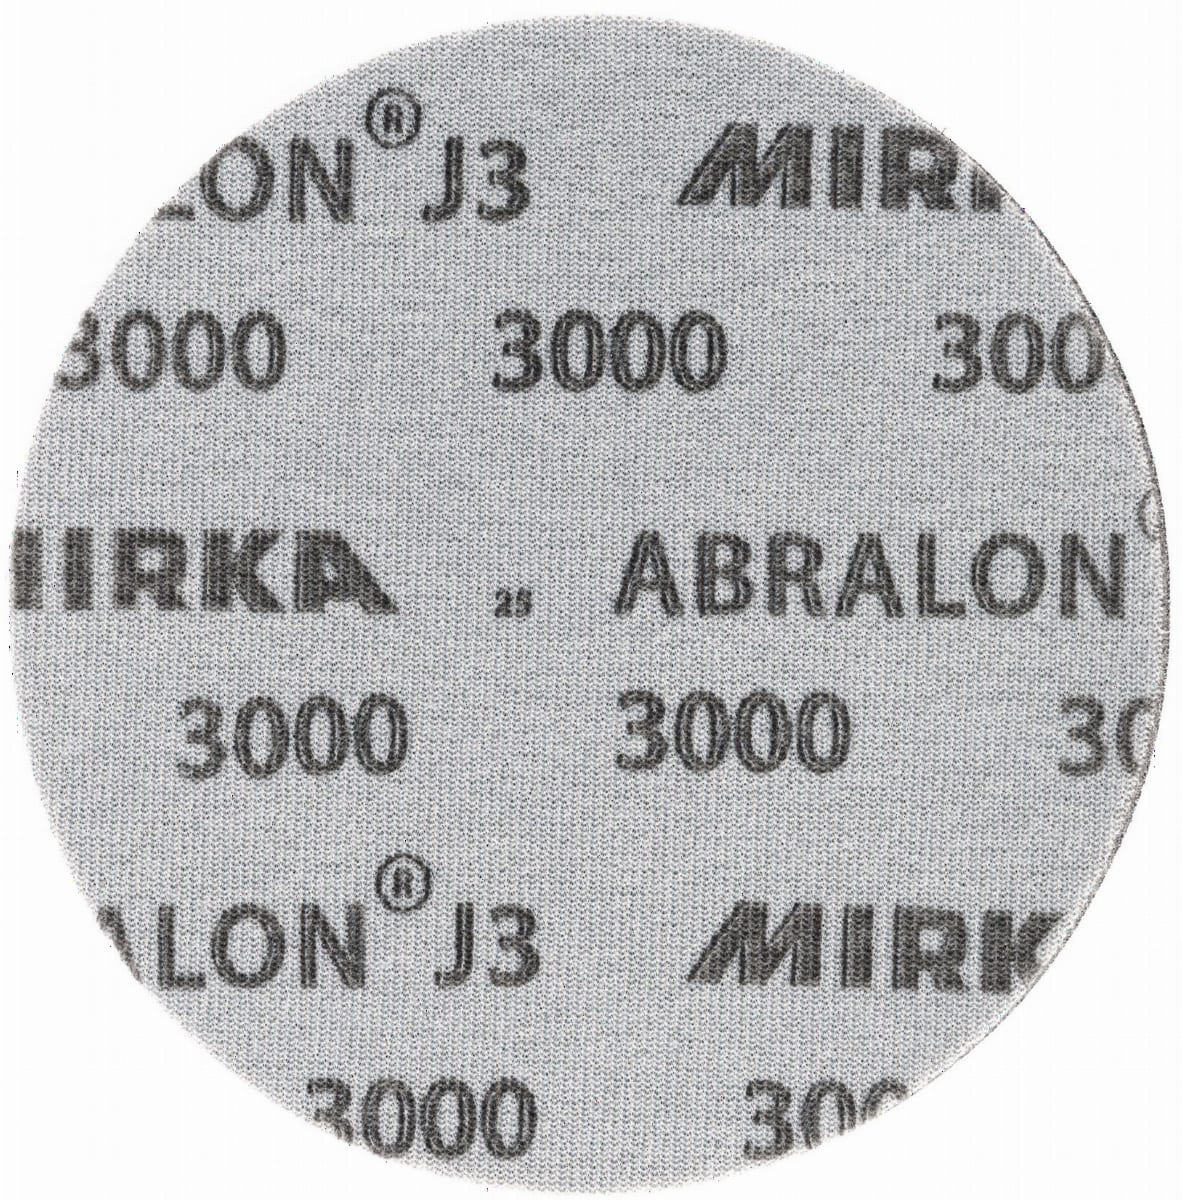 Mirka® Abralon J3 8M055363, Ø 225 mm, P2000, S, Ungelocht, Kletthaftend, Schleifscheibe mit Siliziumkarbidkorn, Für Finish- und Polierarbeiten an Werkstücken